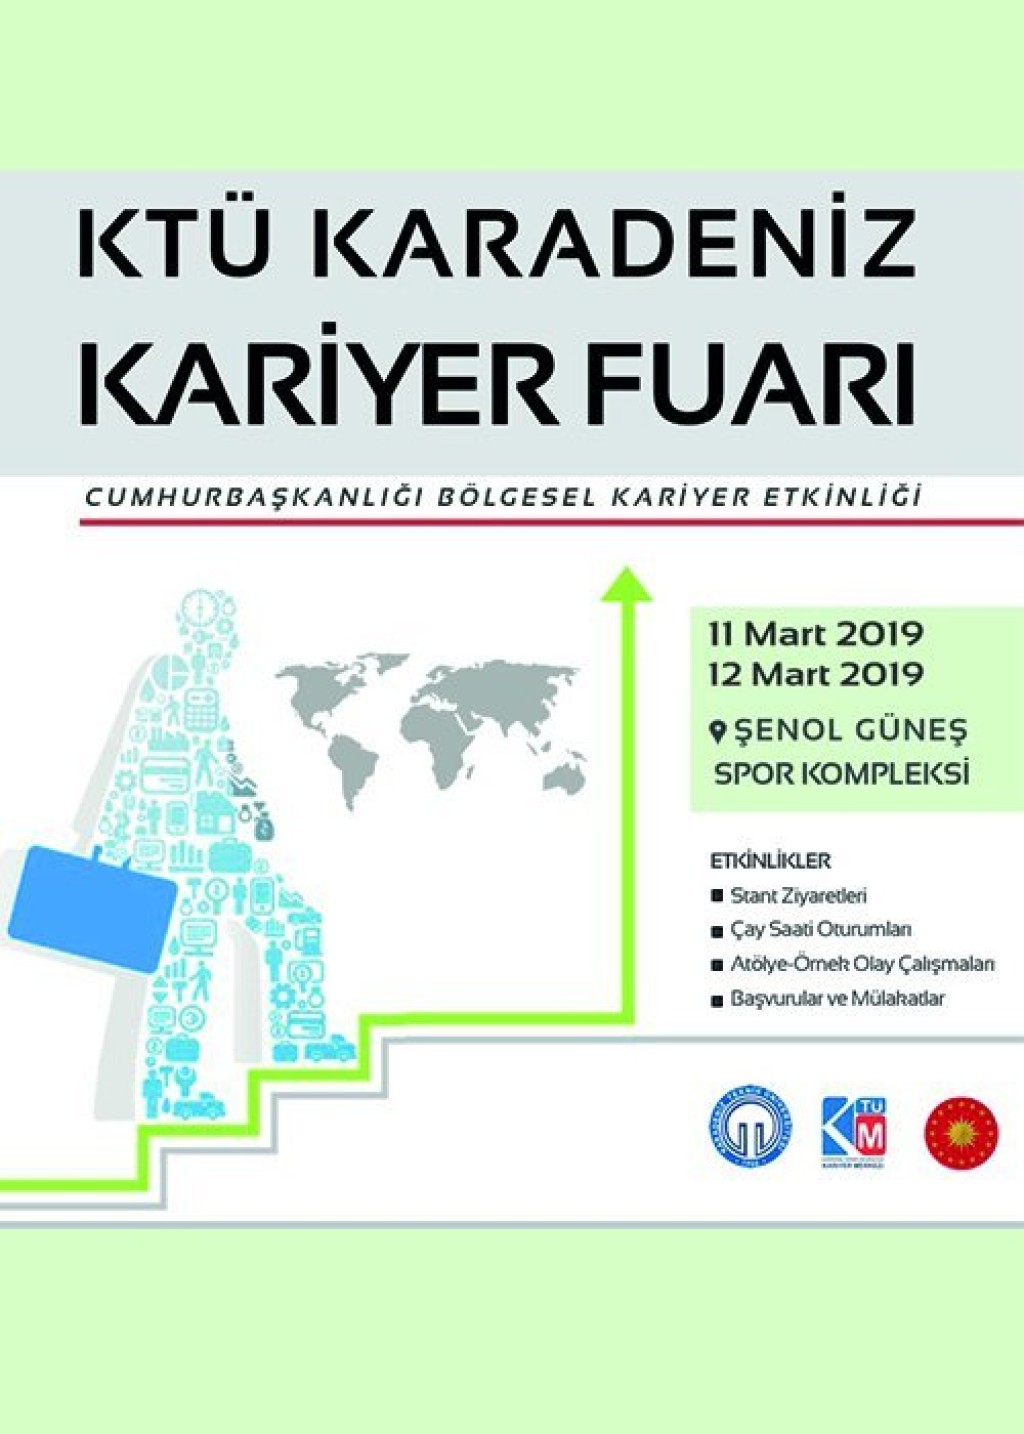 2019 KTÜ Karadeniz Kariyer Fuarı2019 KTÜ Karadeniz Kariyer Fuarı